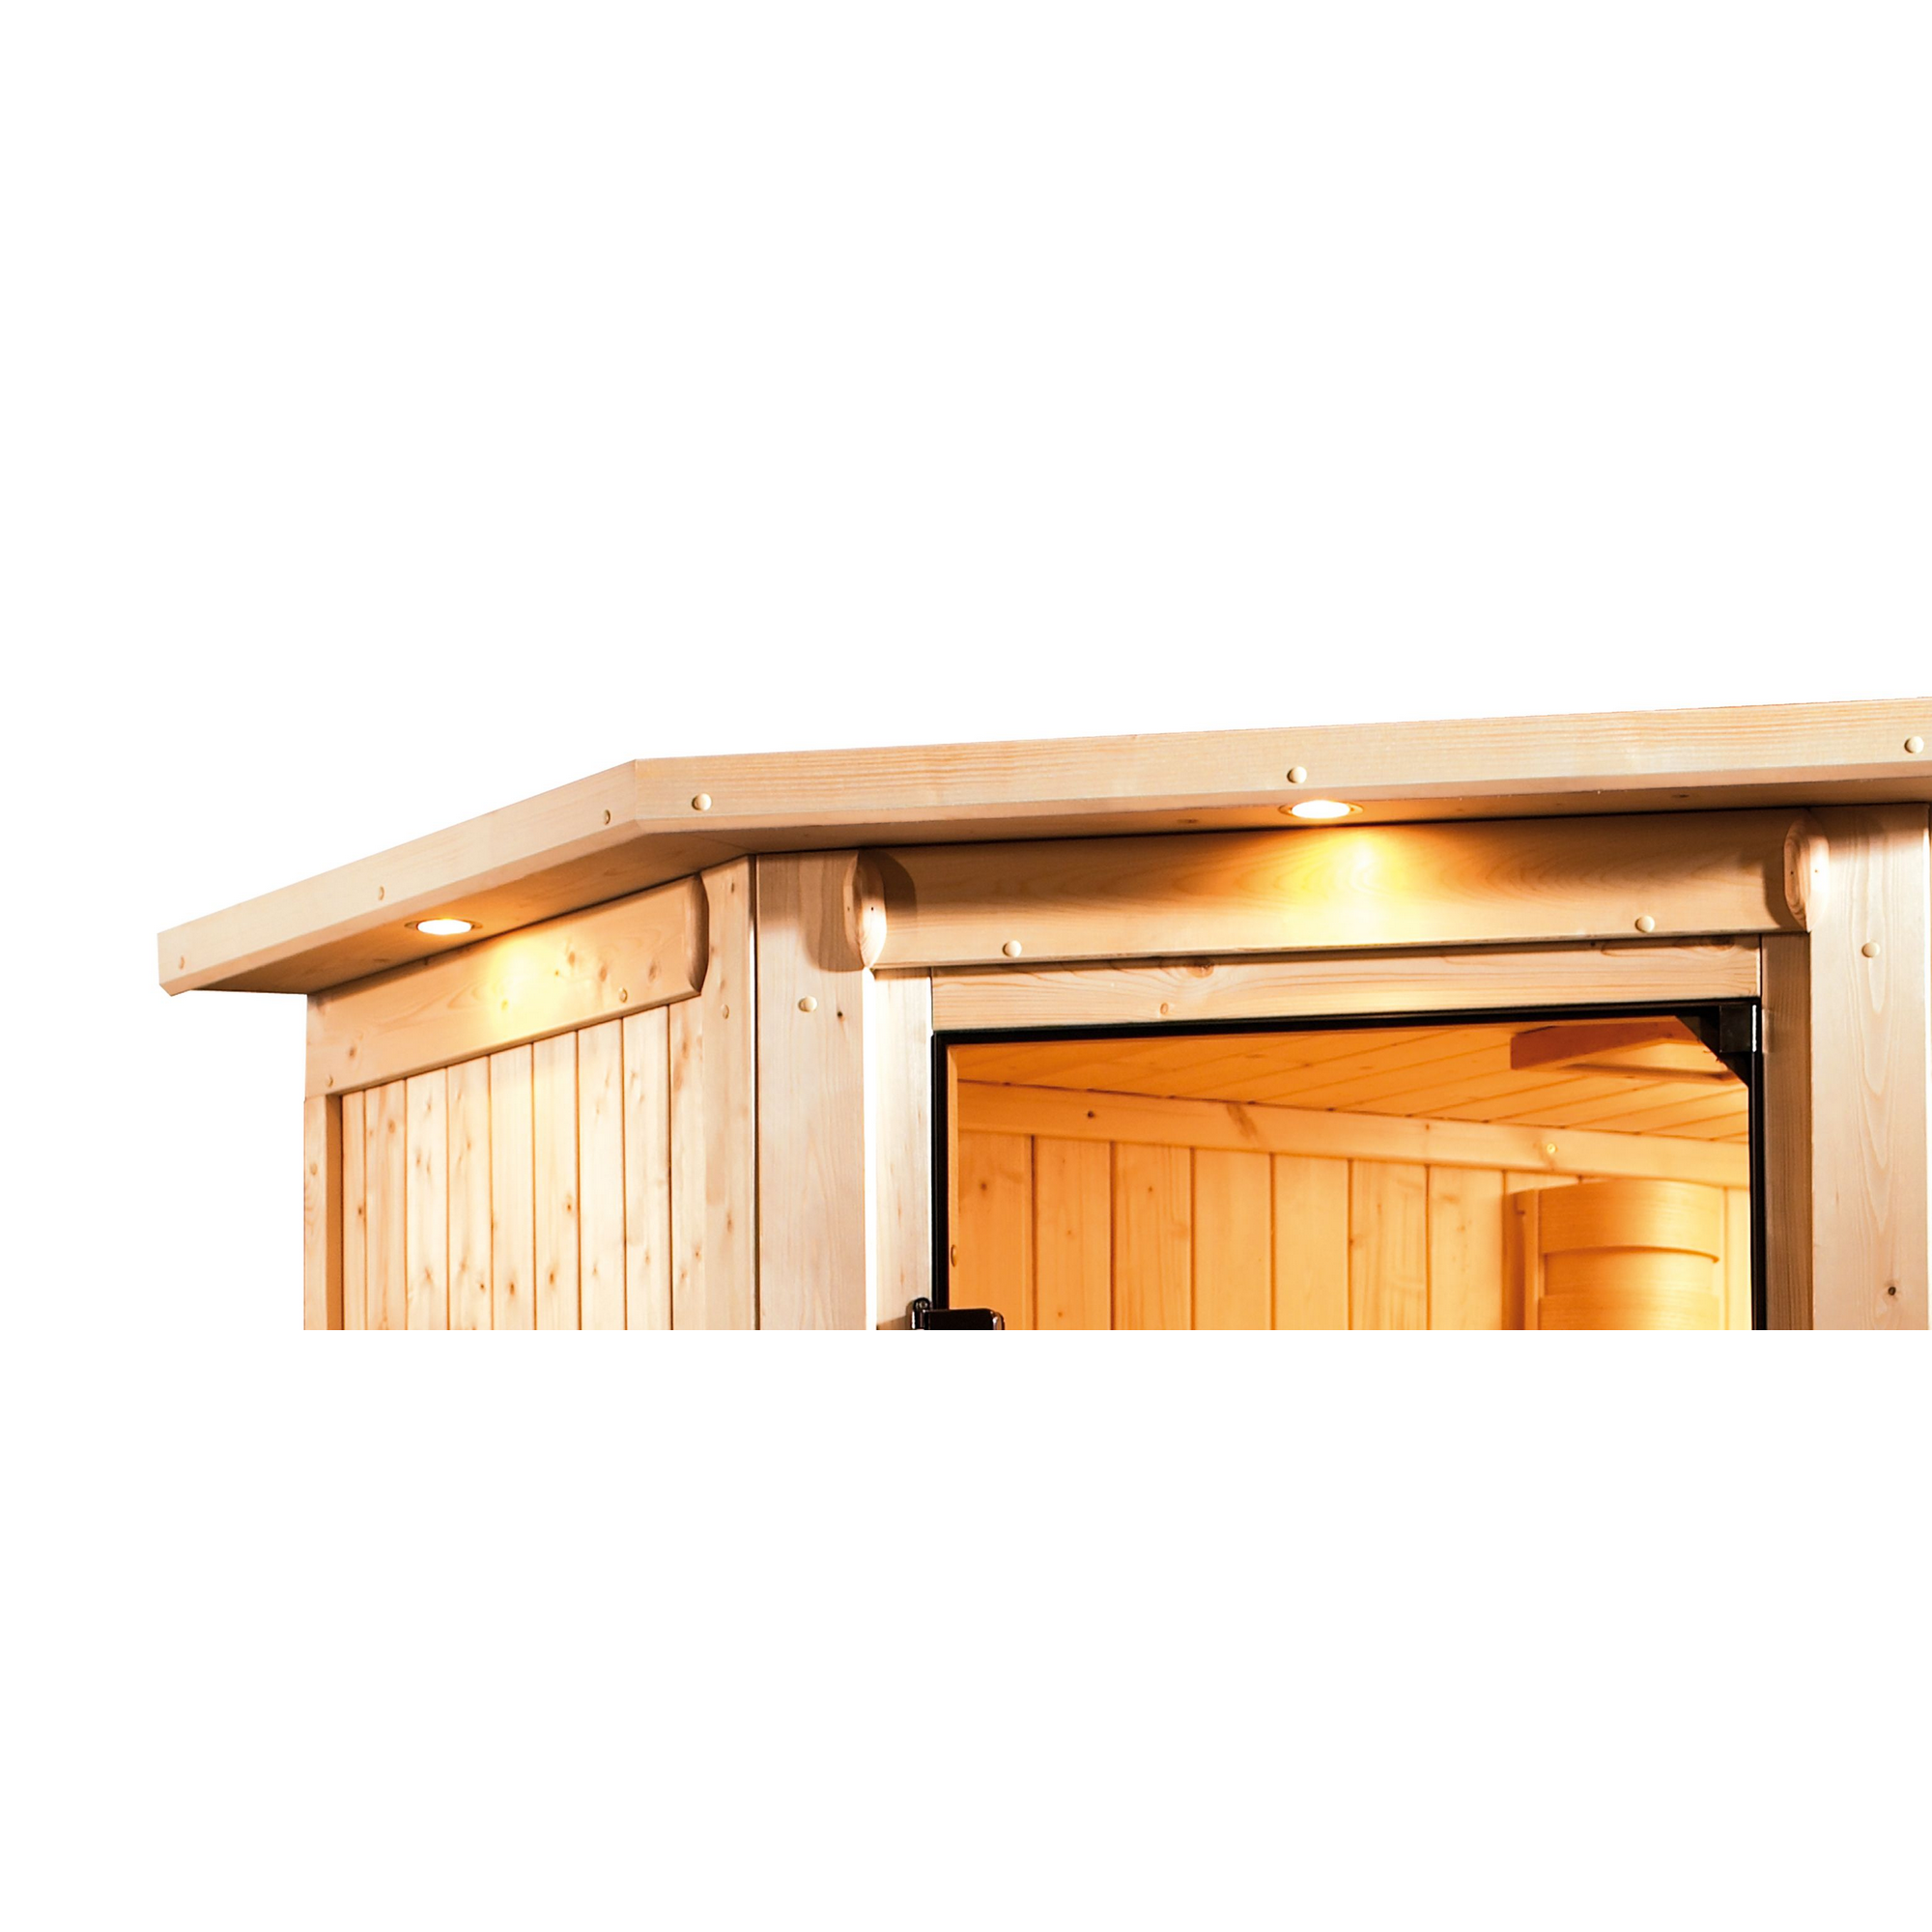 Elementsauna 'Arabella' naturbelassen mit Kranz bronzierter Tür und Glasfront 9 kW Ofen externe Steuerung 240,5 x 248 x 202 cm + product picture